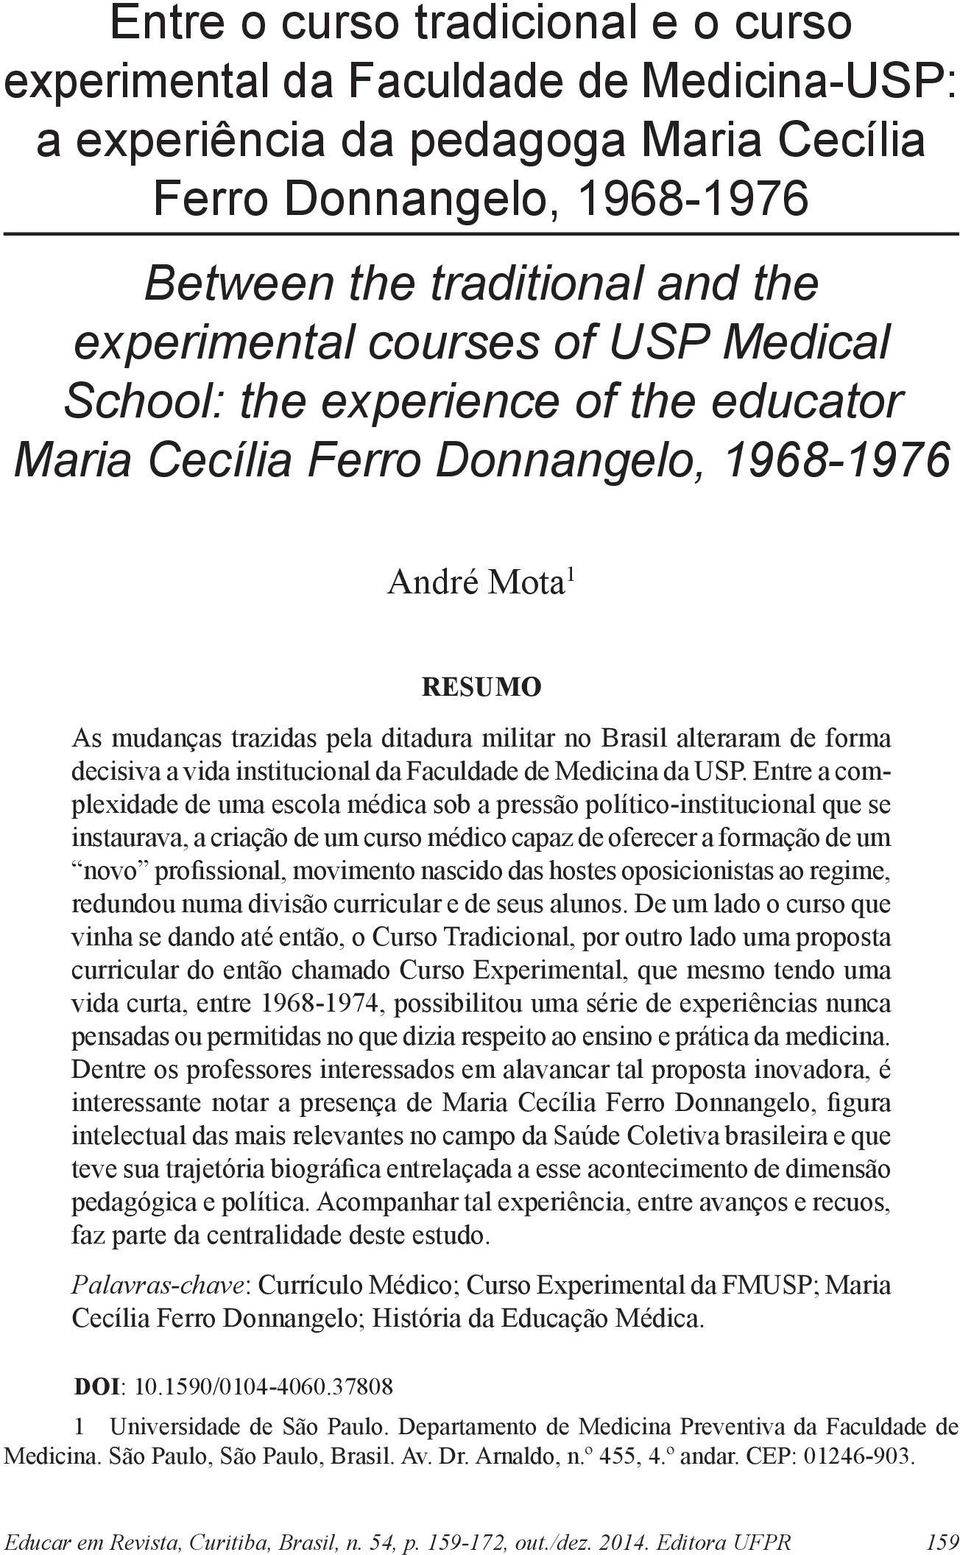 vida institucional da Faculdade de Medicina da USP.